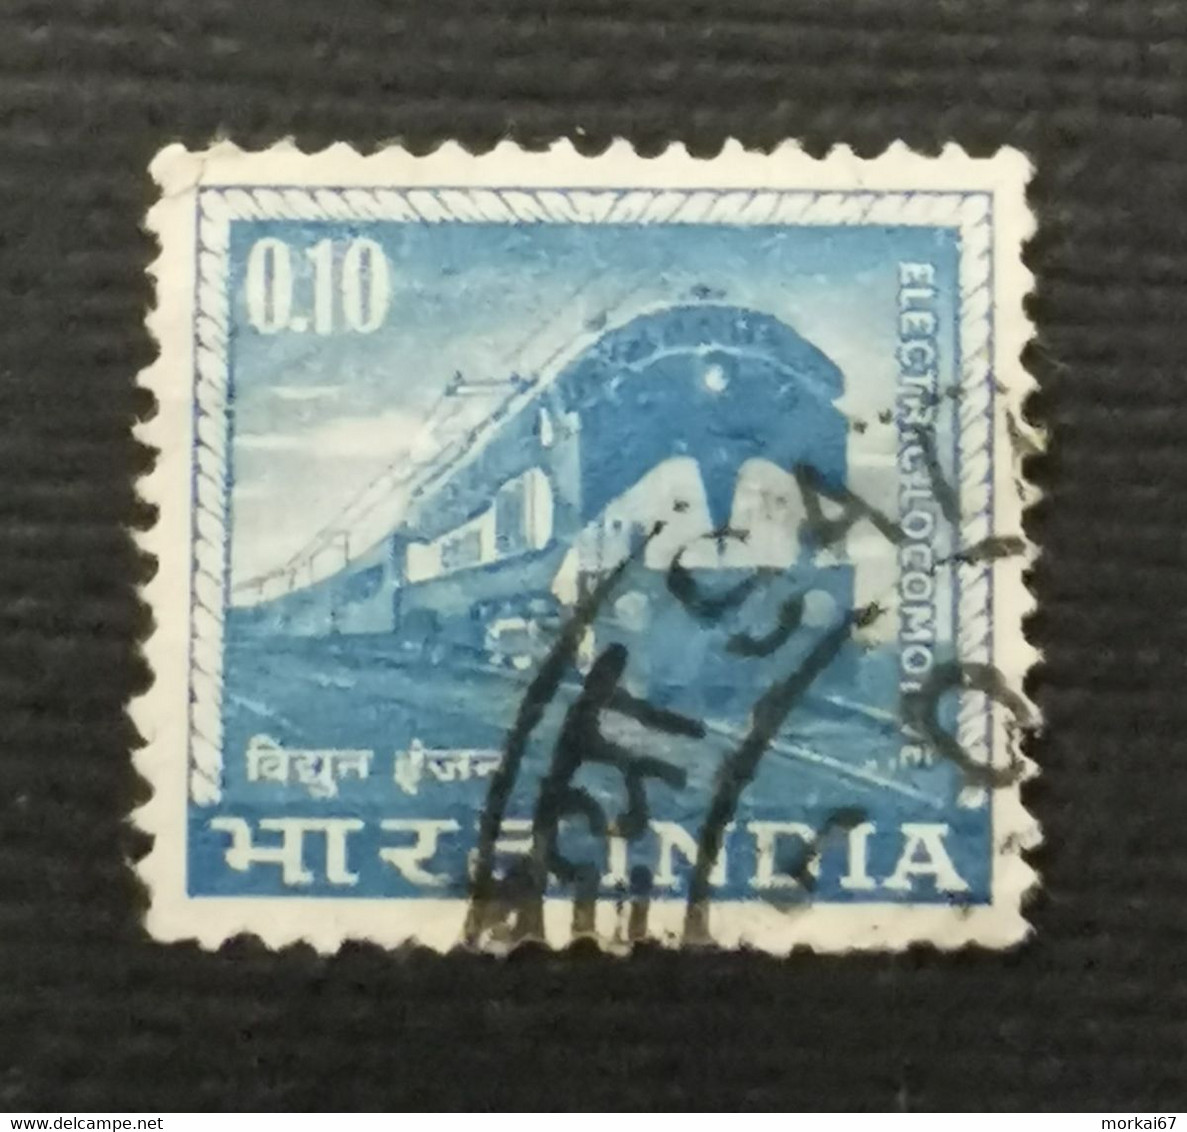 Lot de timbres oblitérés pays Inde